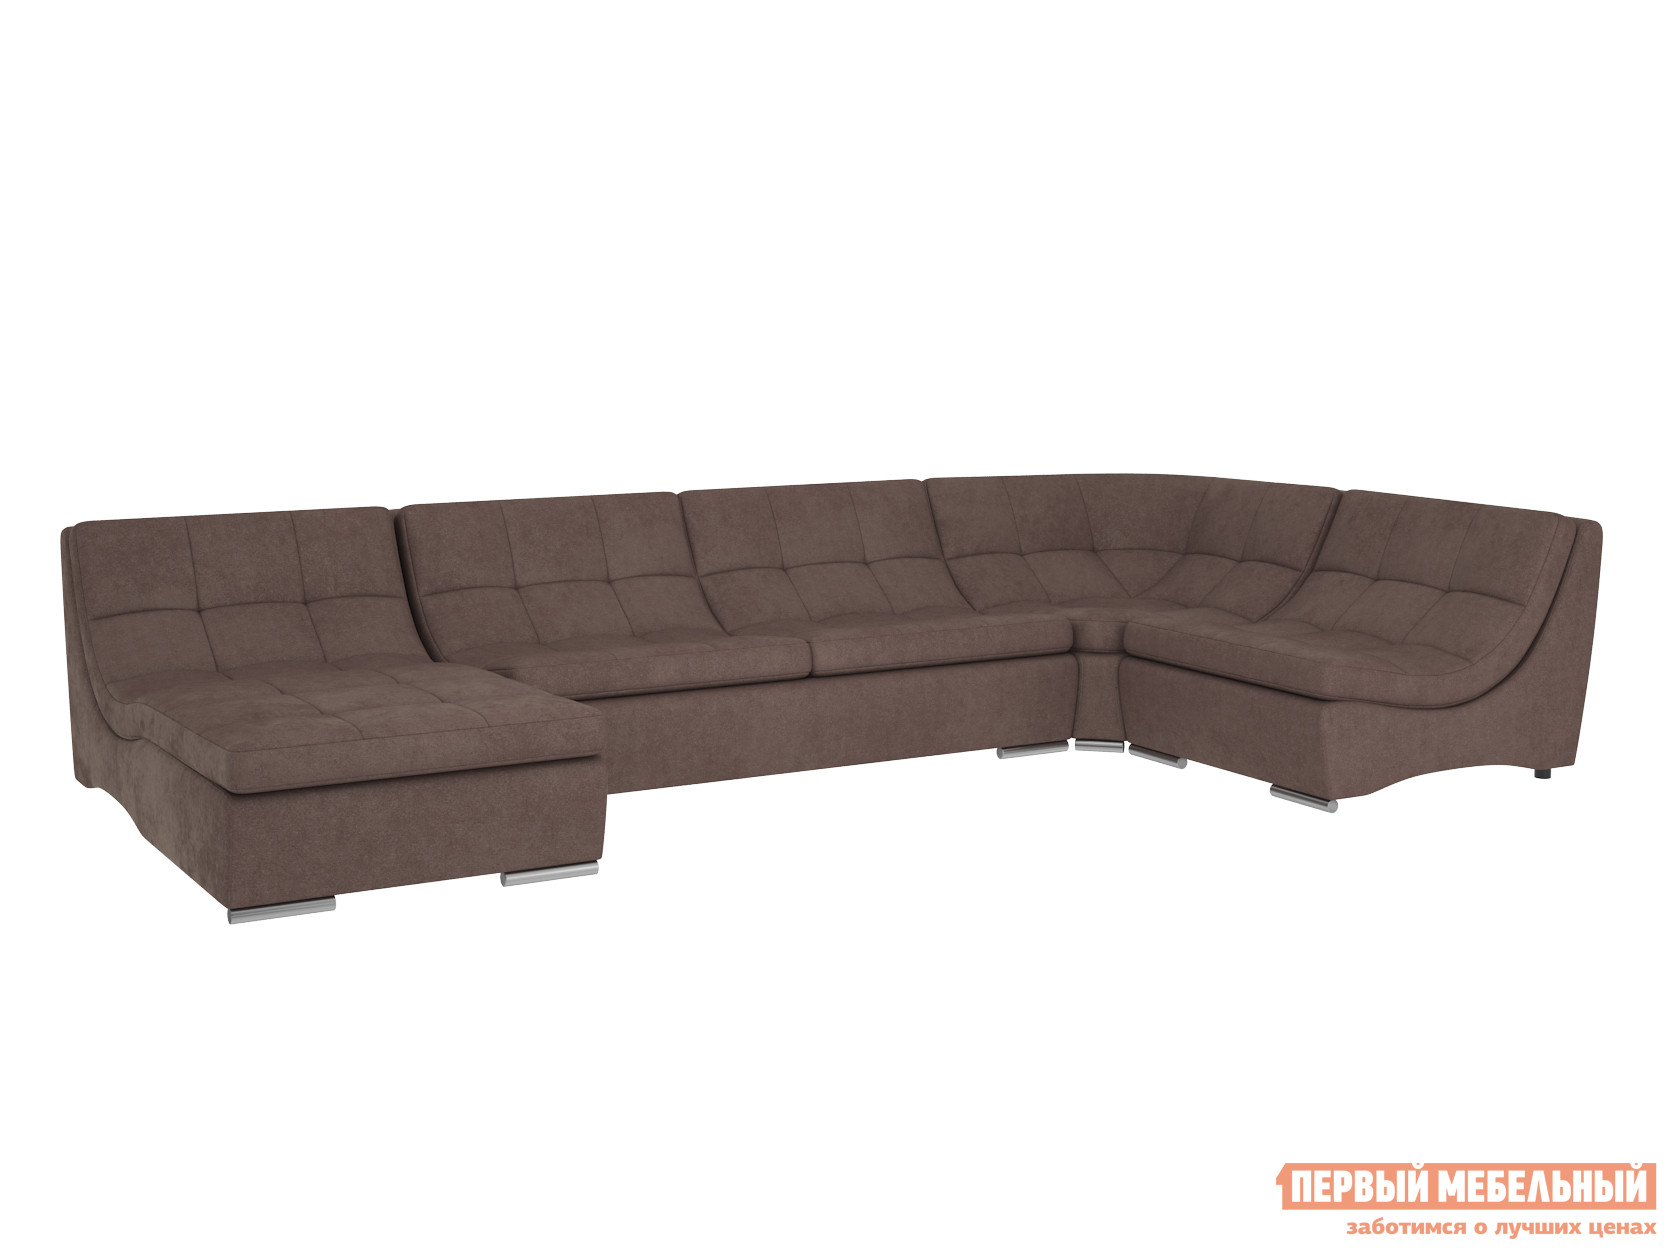 Угловой диван Первый Мебельный Модульная система Сан-Диего, вариант 3